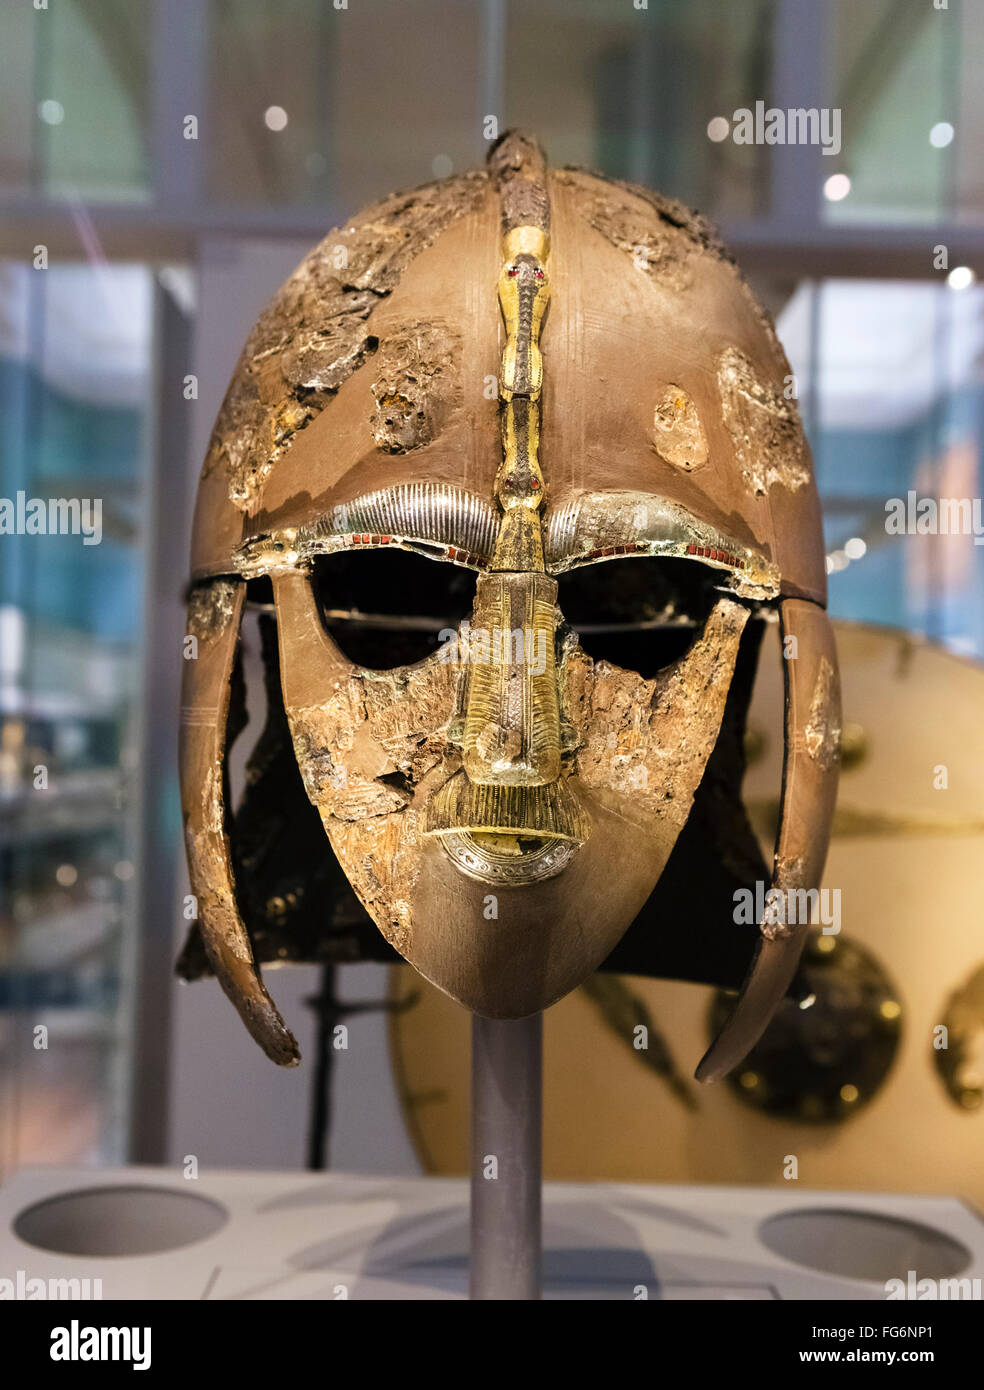 Le casque de Sutton Hoo, une partie de la trésor Sutton Hoo, British Museum, Londres, Angleterre, Royaume-Uni Banque D'Images